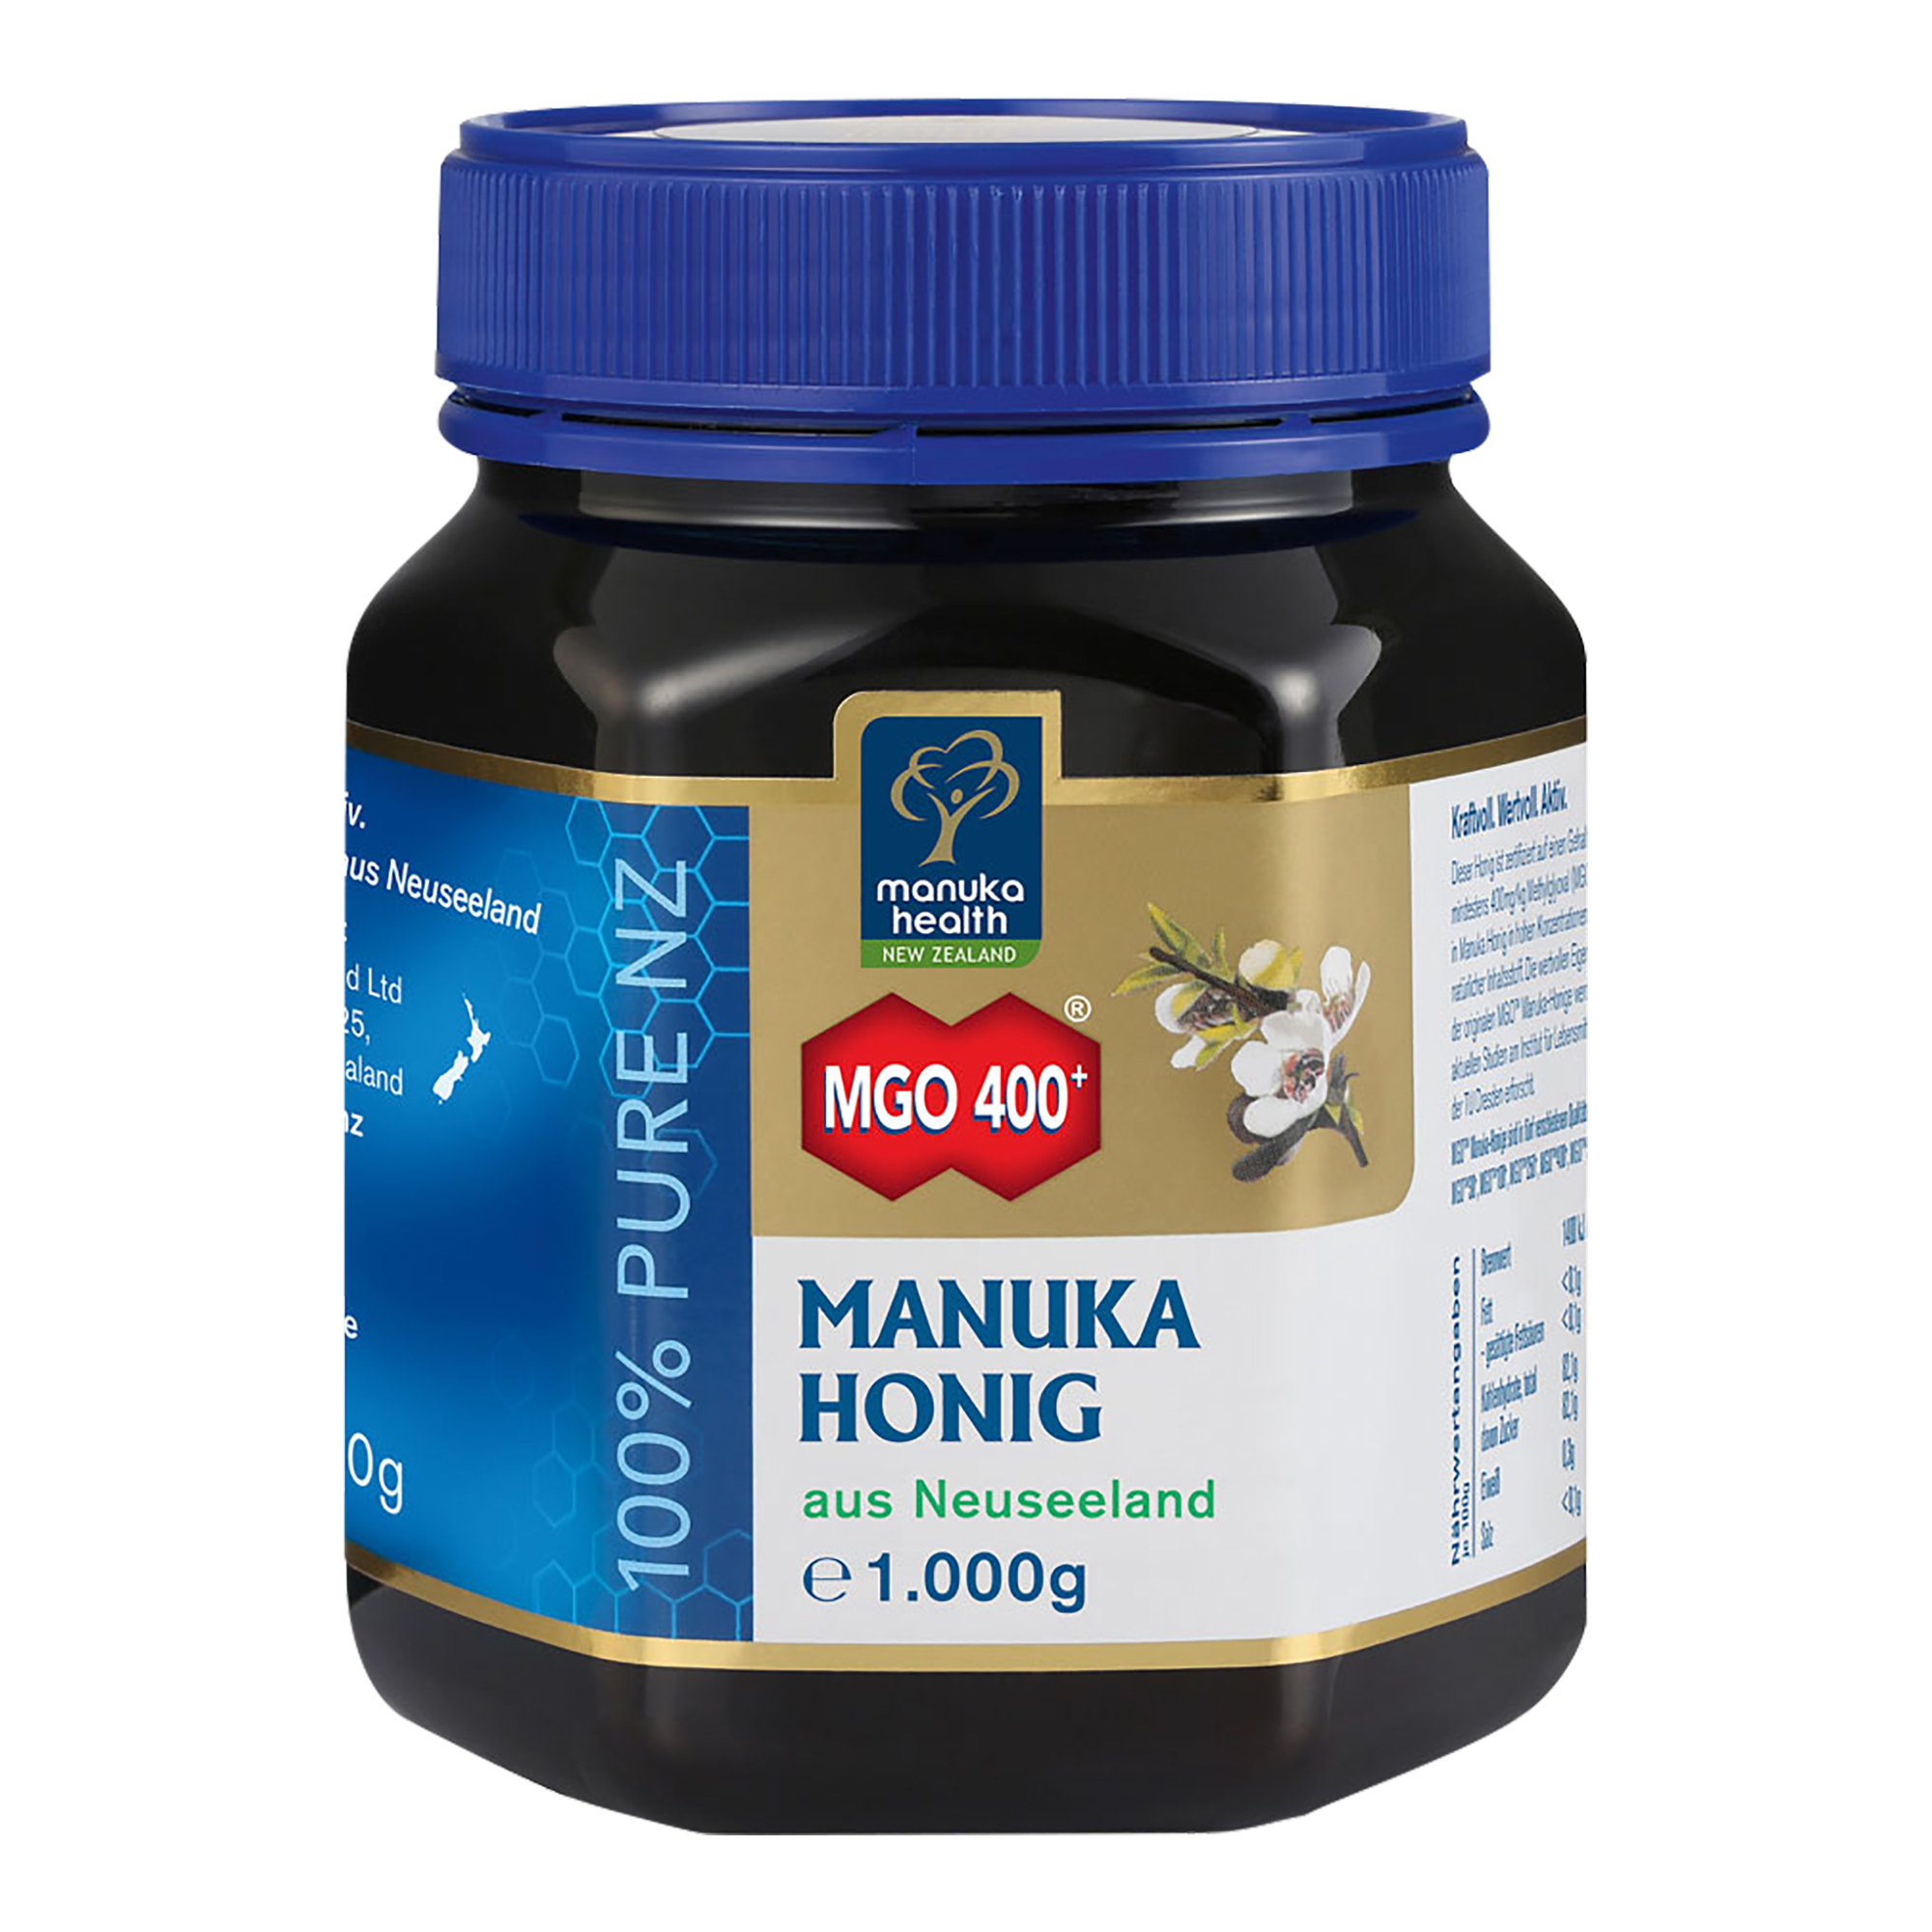 Manuka Honig zur Stärkung des allgemeinen Wohlbefindens. Mit Gehalt von mindestens 400 mg MGO.